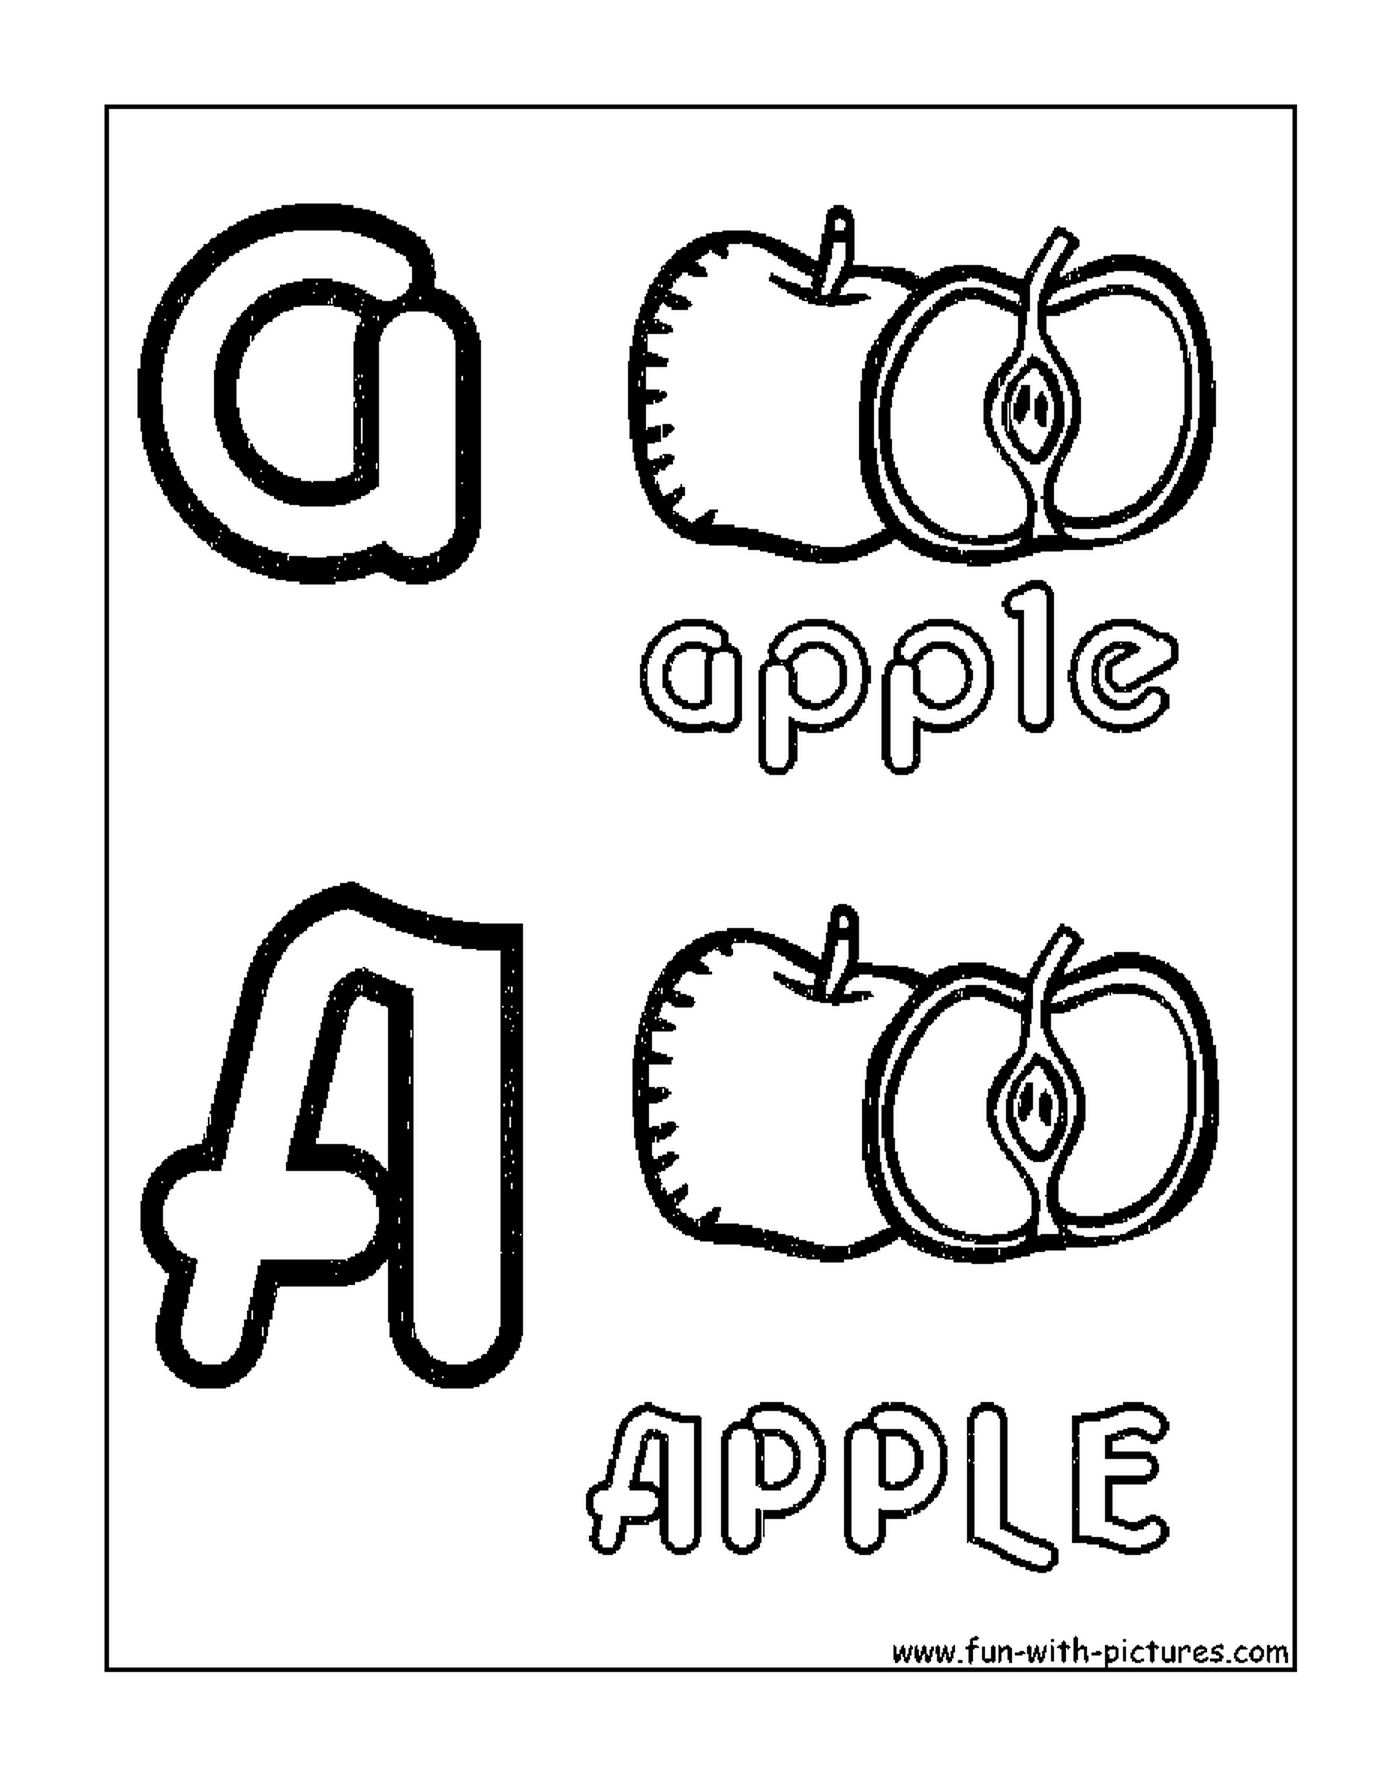  Яблоко в алфавите 